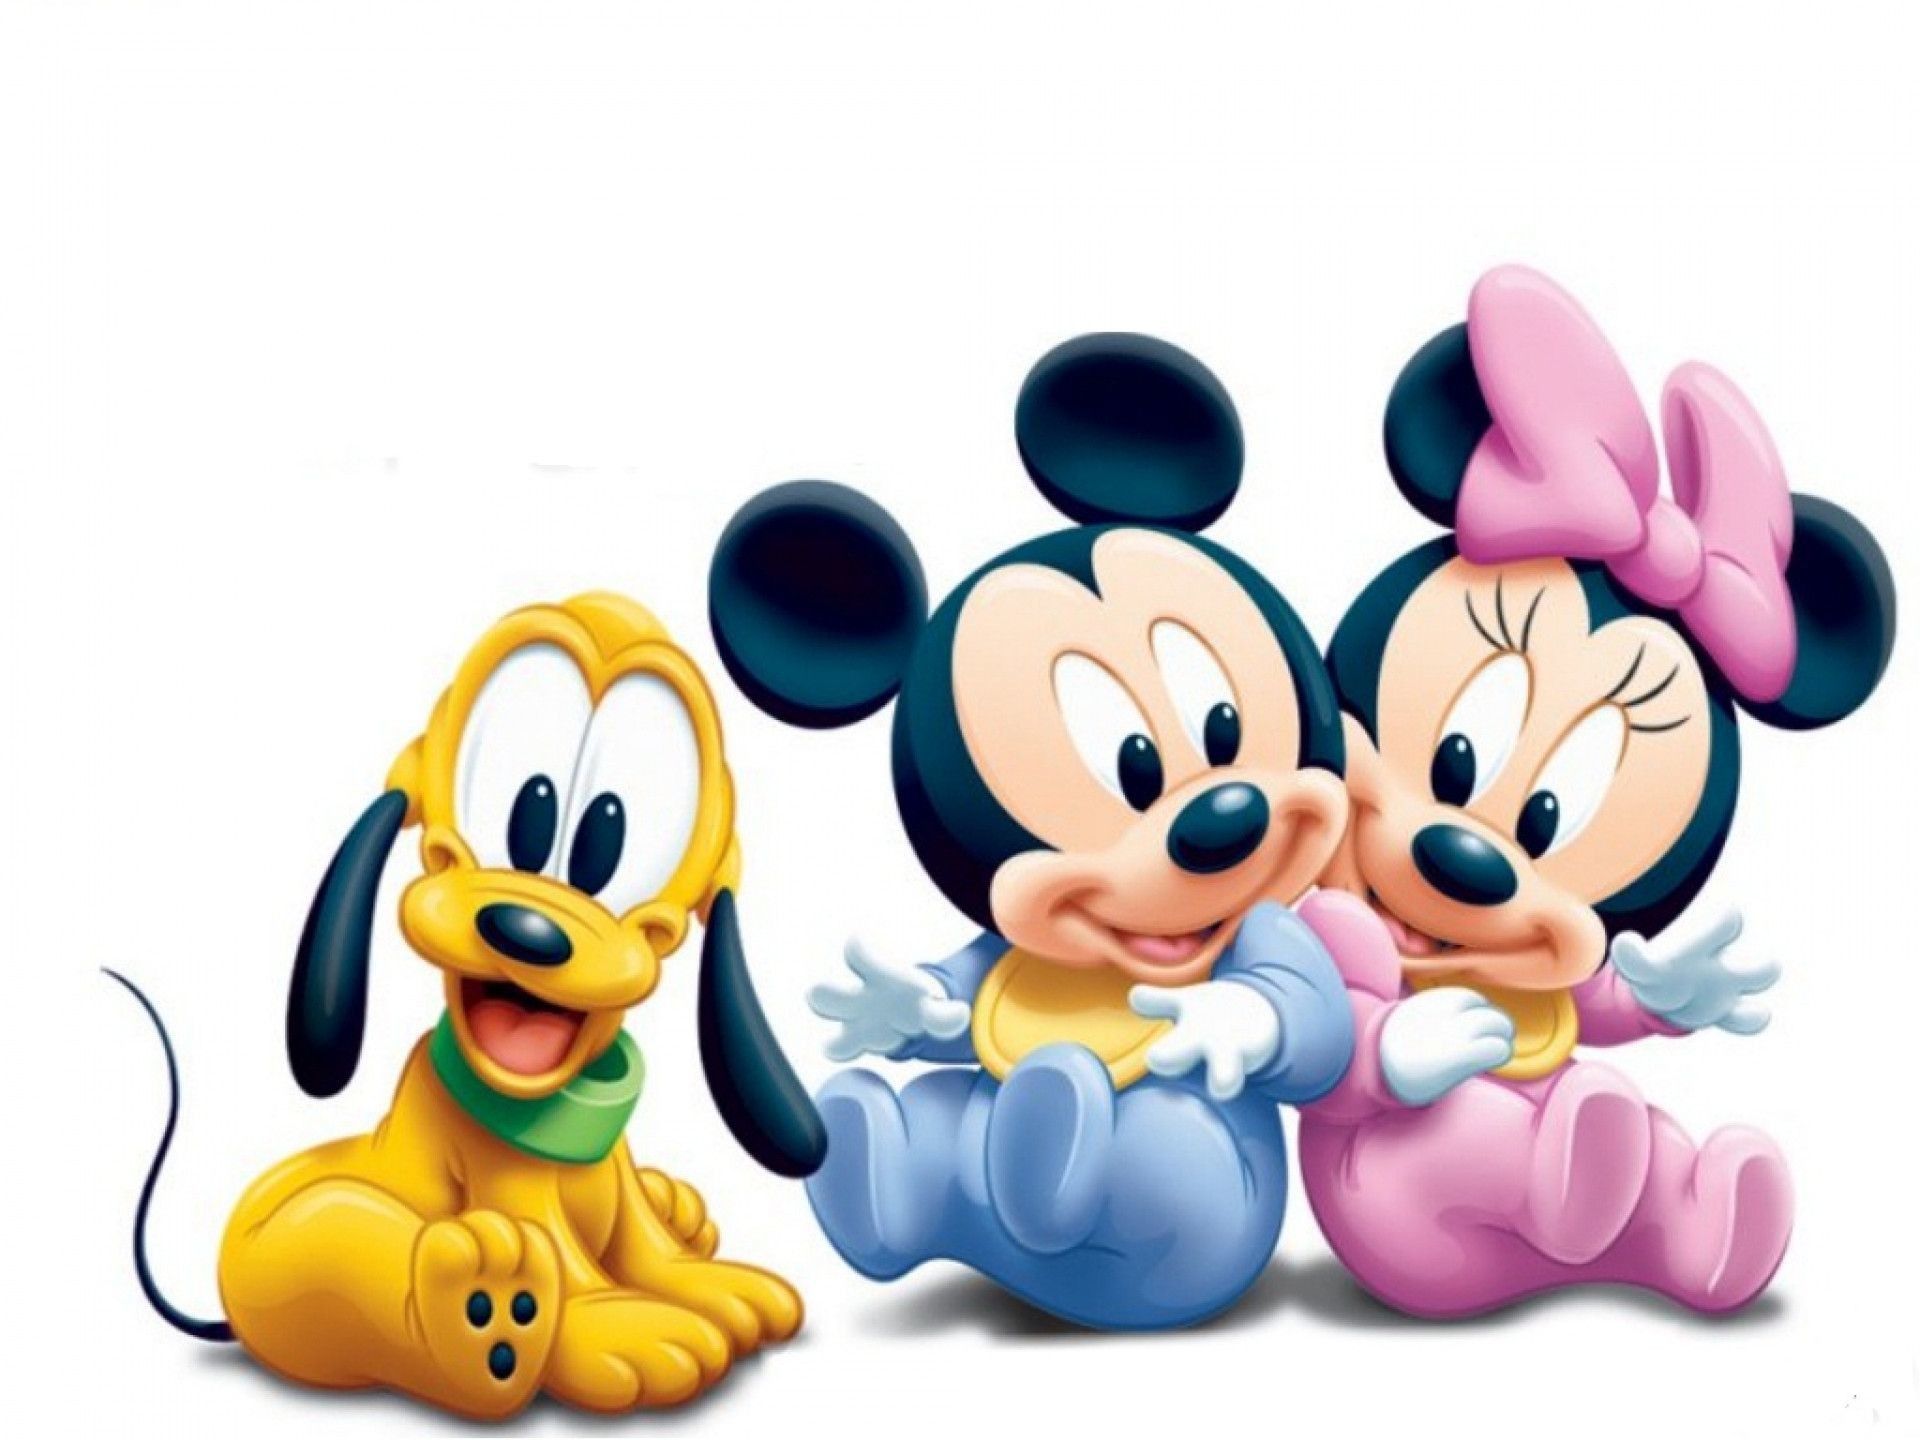 Fondos de pantalla de Minnie y Mickey Mouse (más de 56 imágenes)